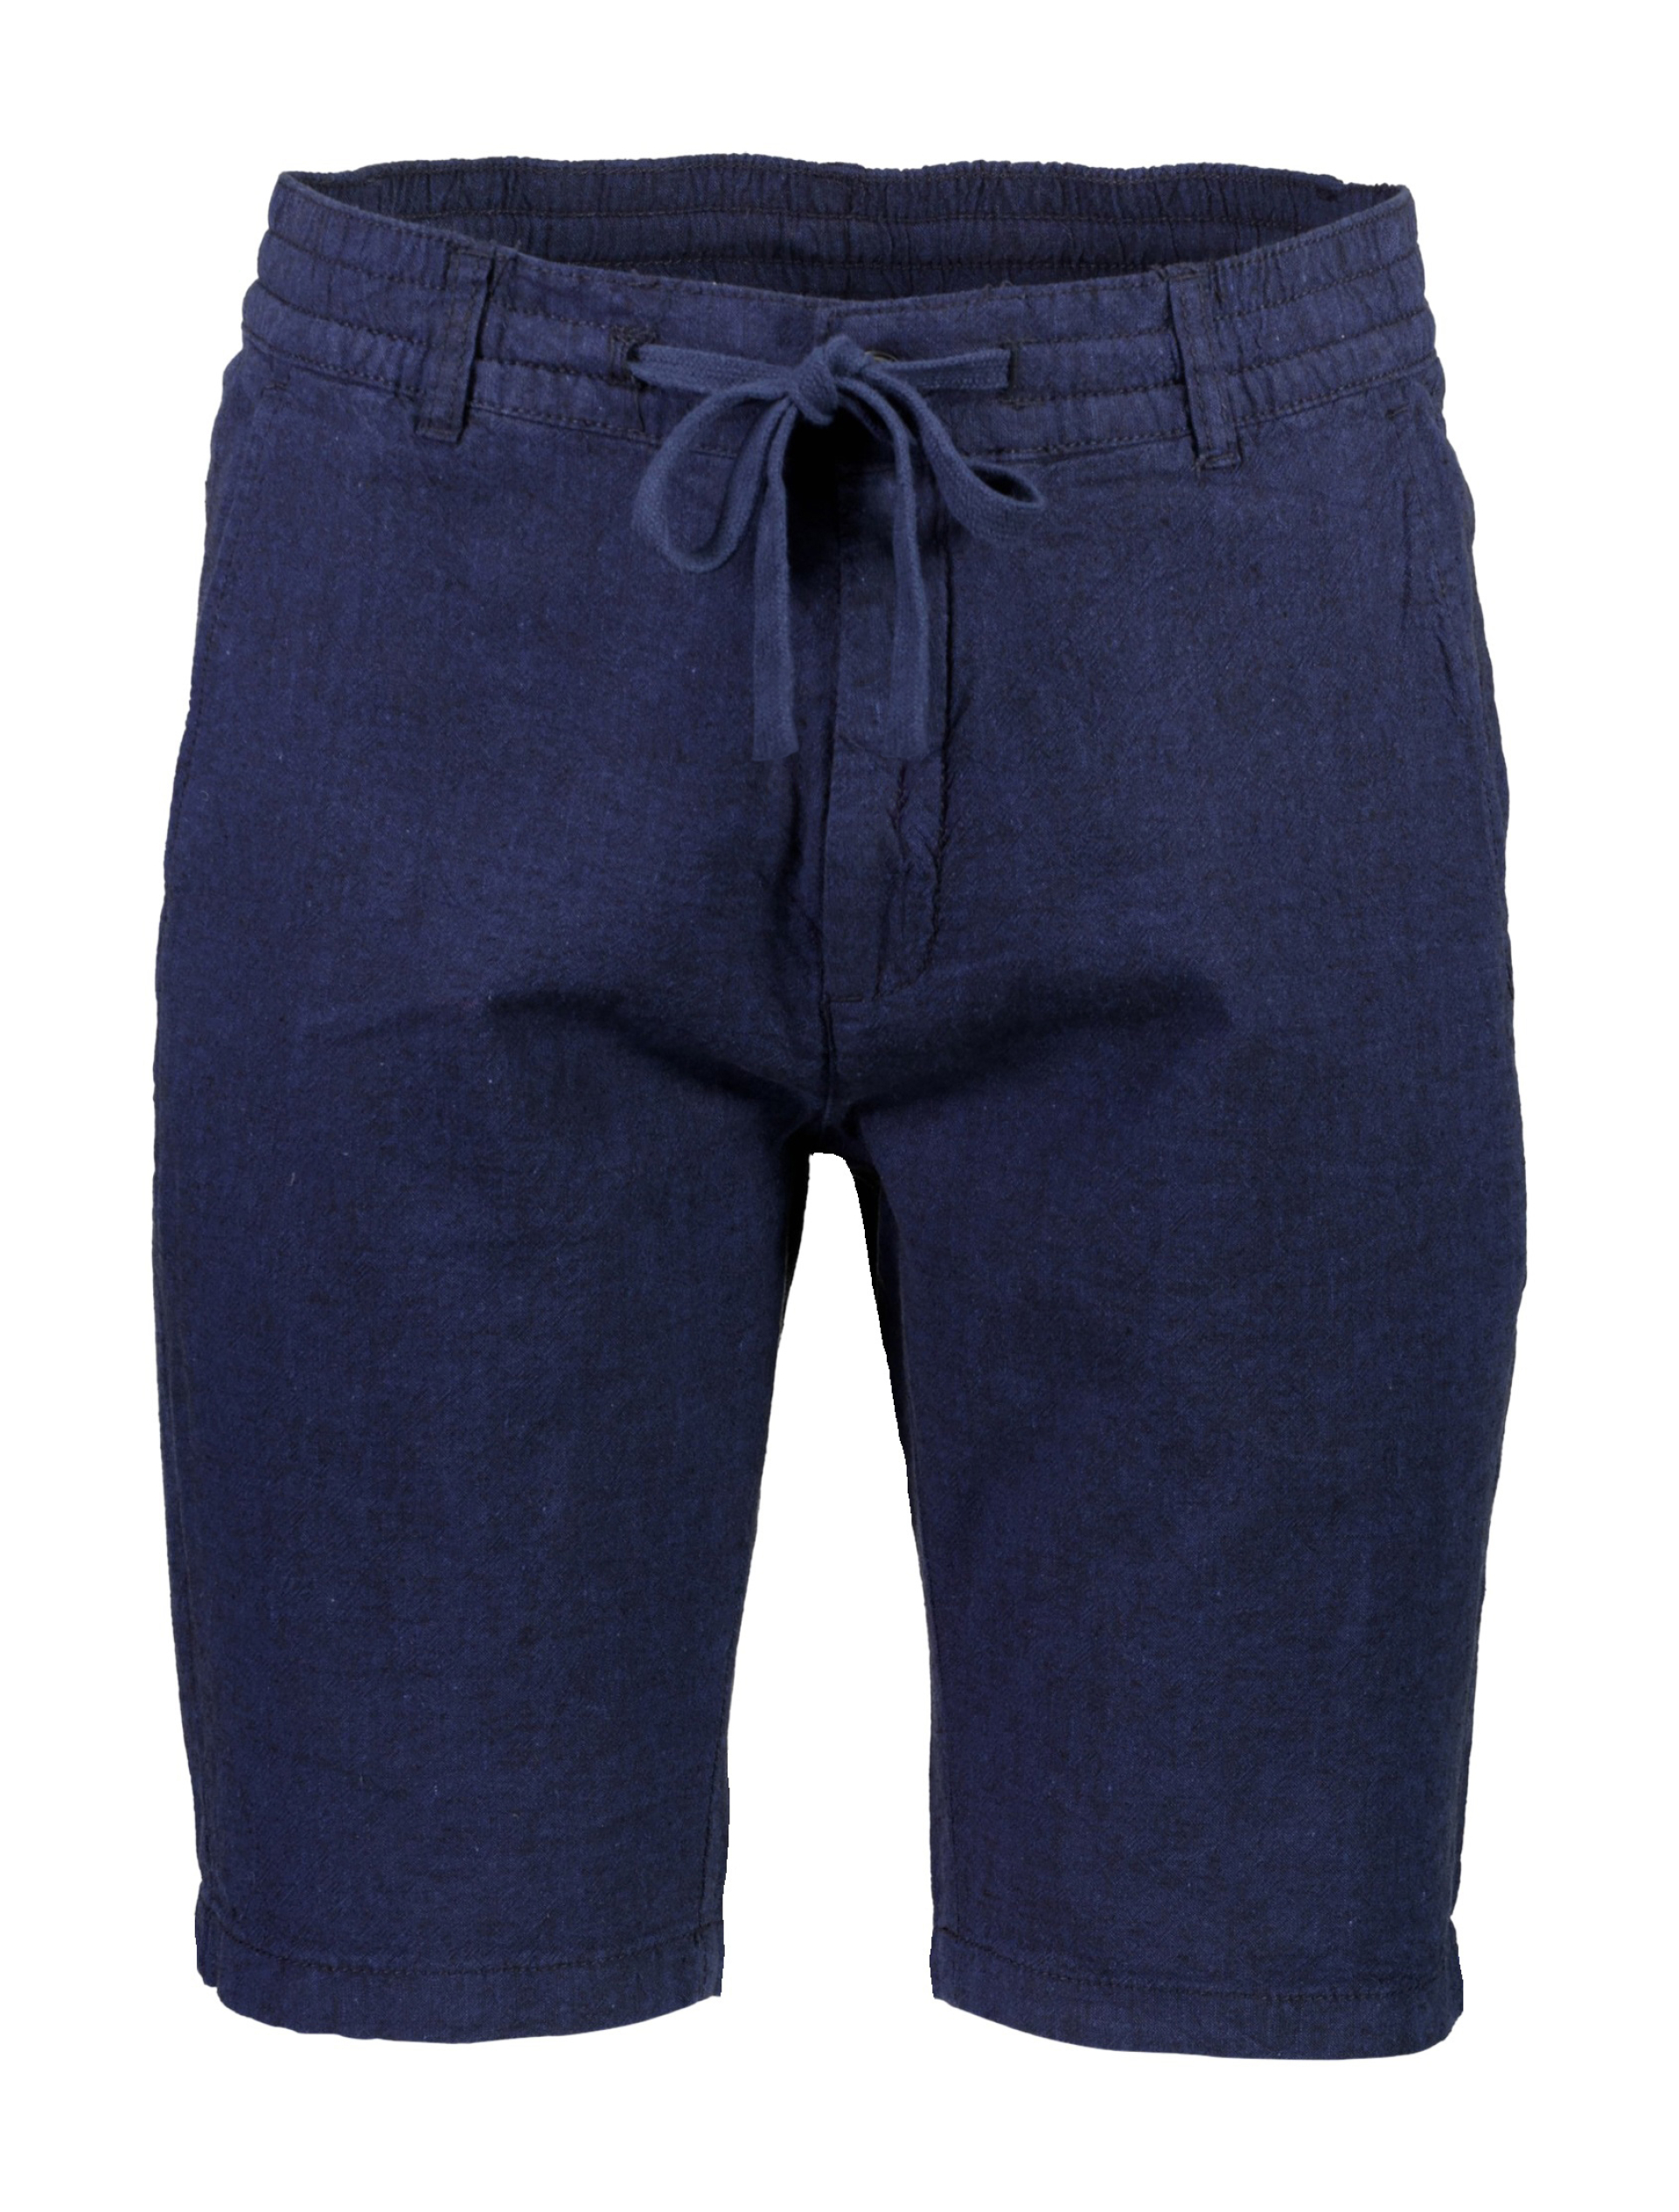 Lindbergh Linen shorts blue / dk blue